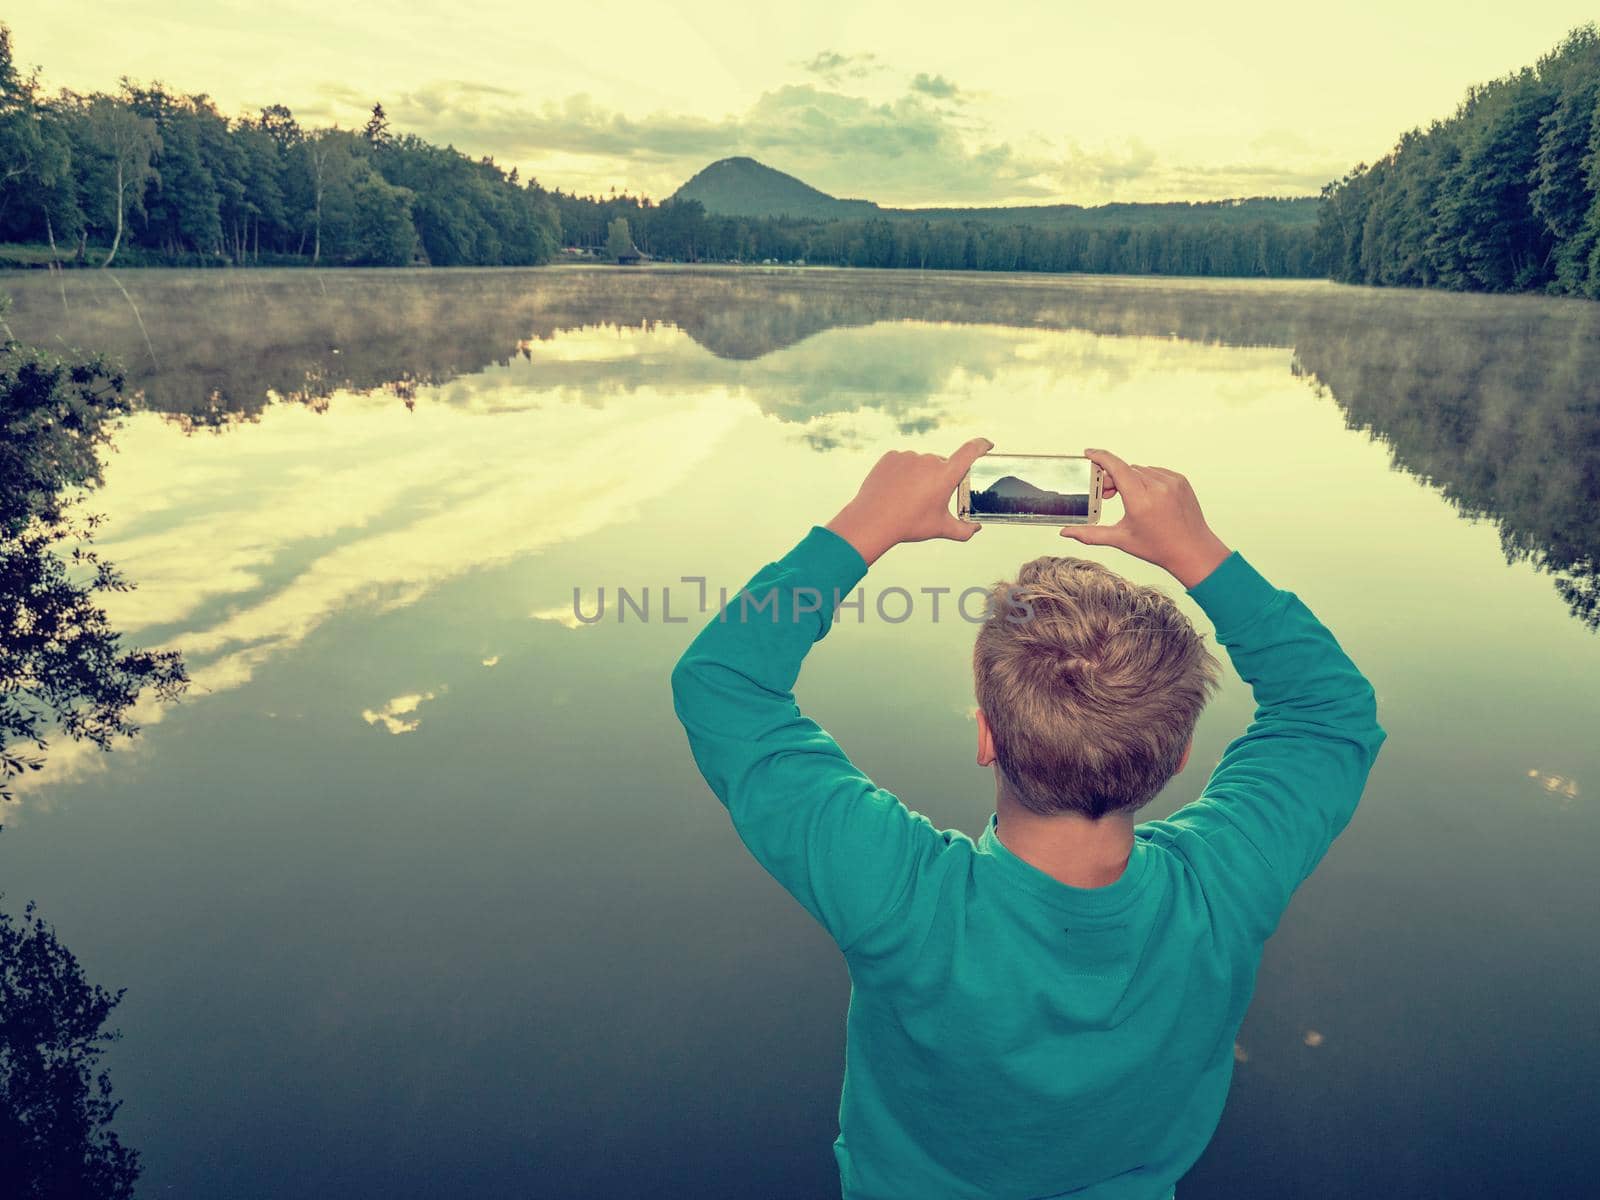 Blue sweatshirt boy takes phone photos of lake by rdonar2